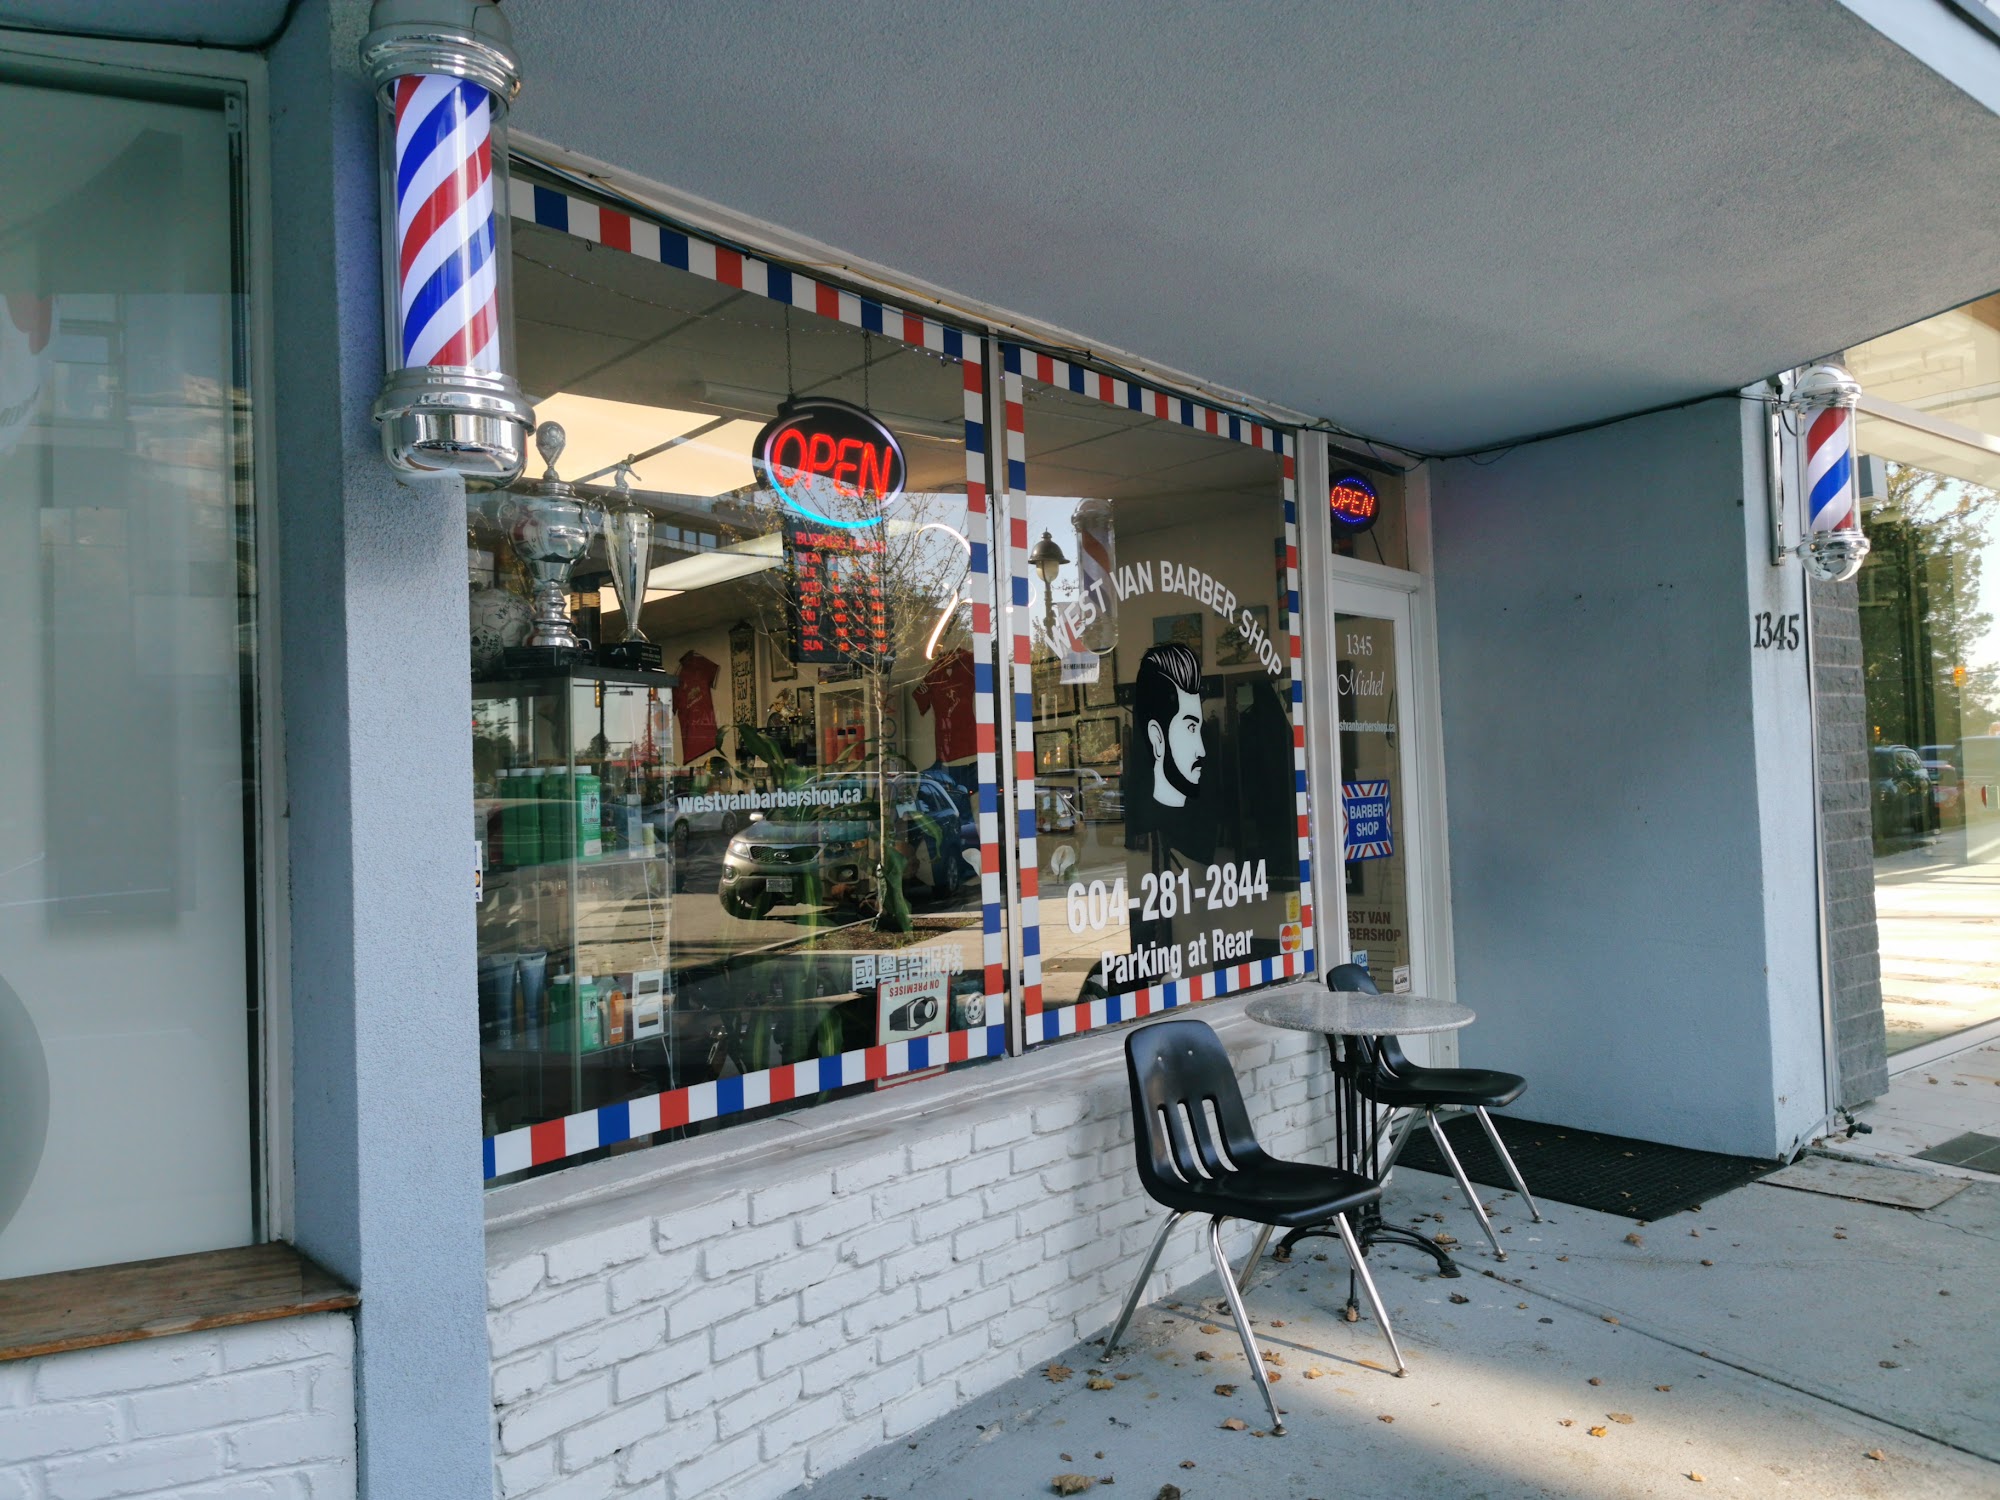 West Van Barber Shop